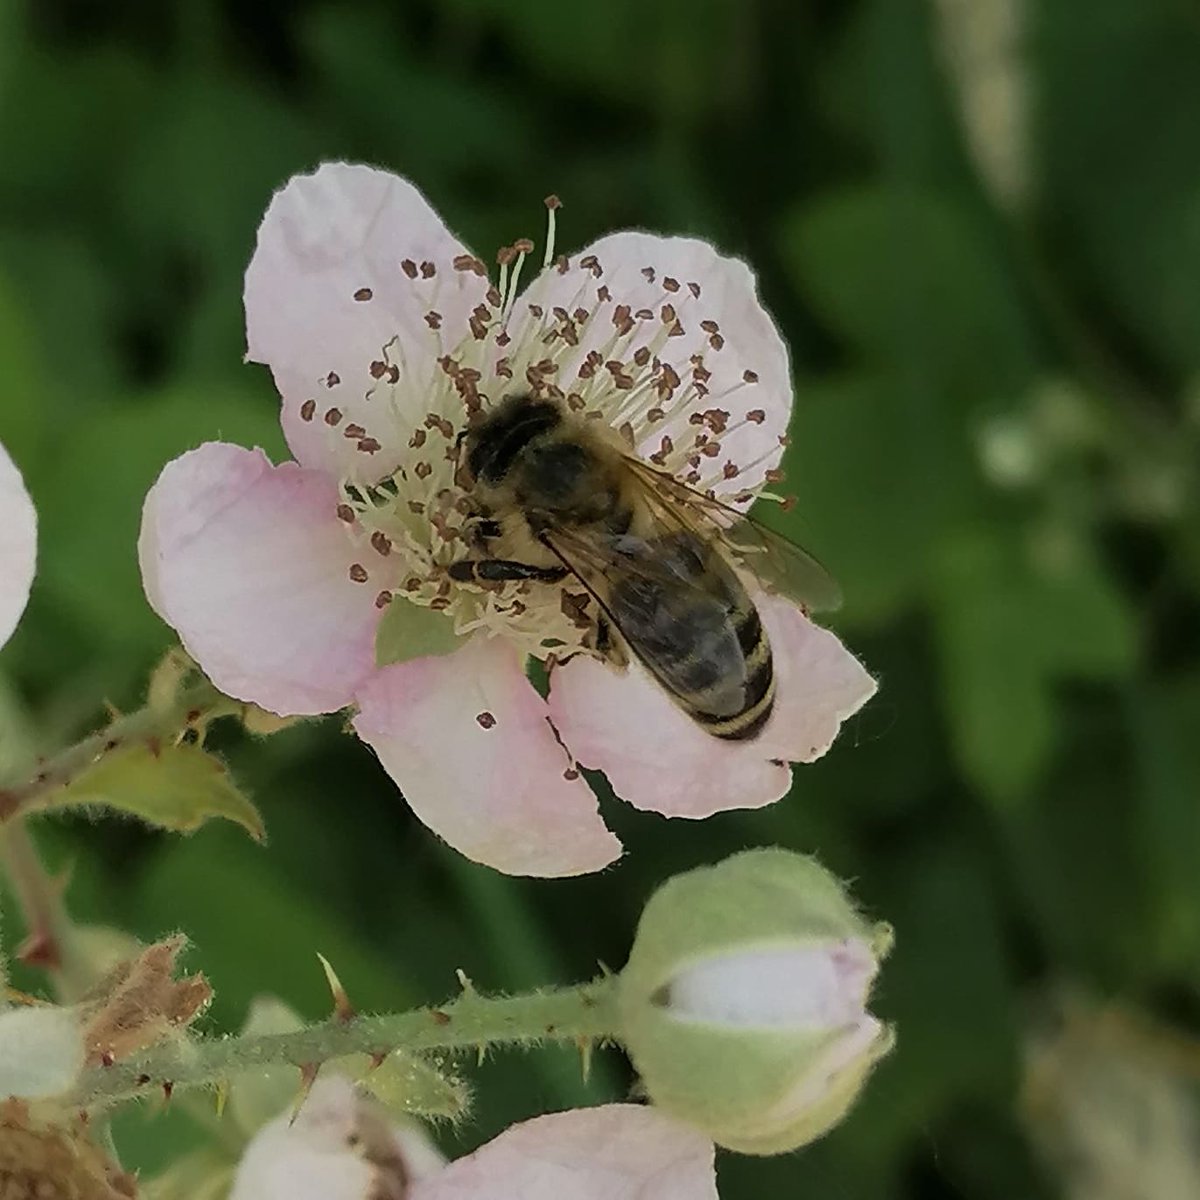 Auf die #Brombeeren fahren die #Bienen total ab. 

#nordbadenimker #honig #regional #imker #natur #hirschberg  #naturfotografie #beekeeping #honey #nature #naturephotography #mannheim #ludwigshafen #weinheim #heidelberg #ladenburg #heddesheim